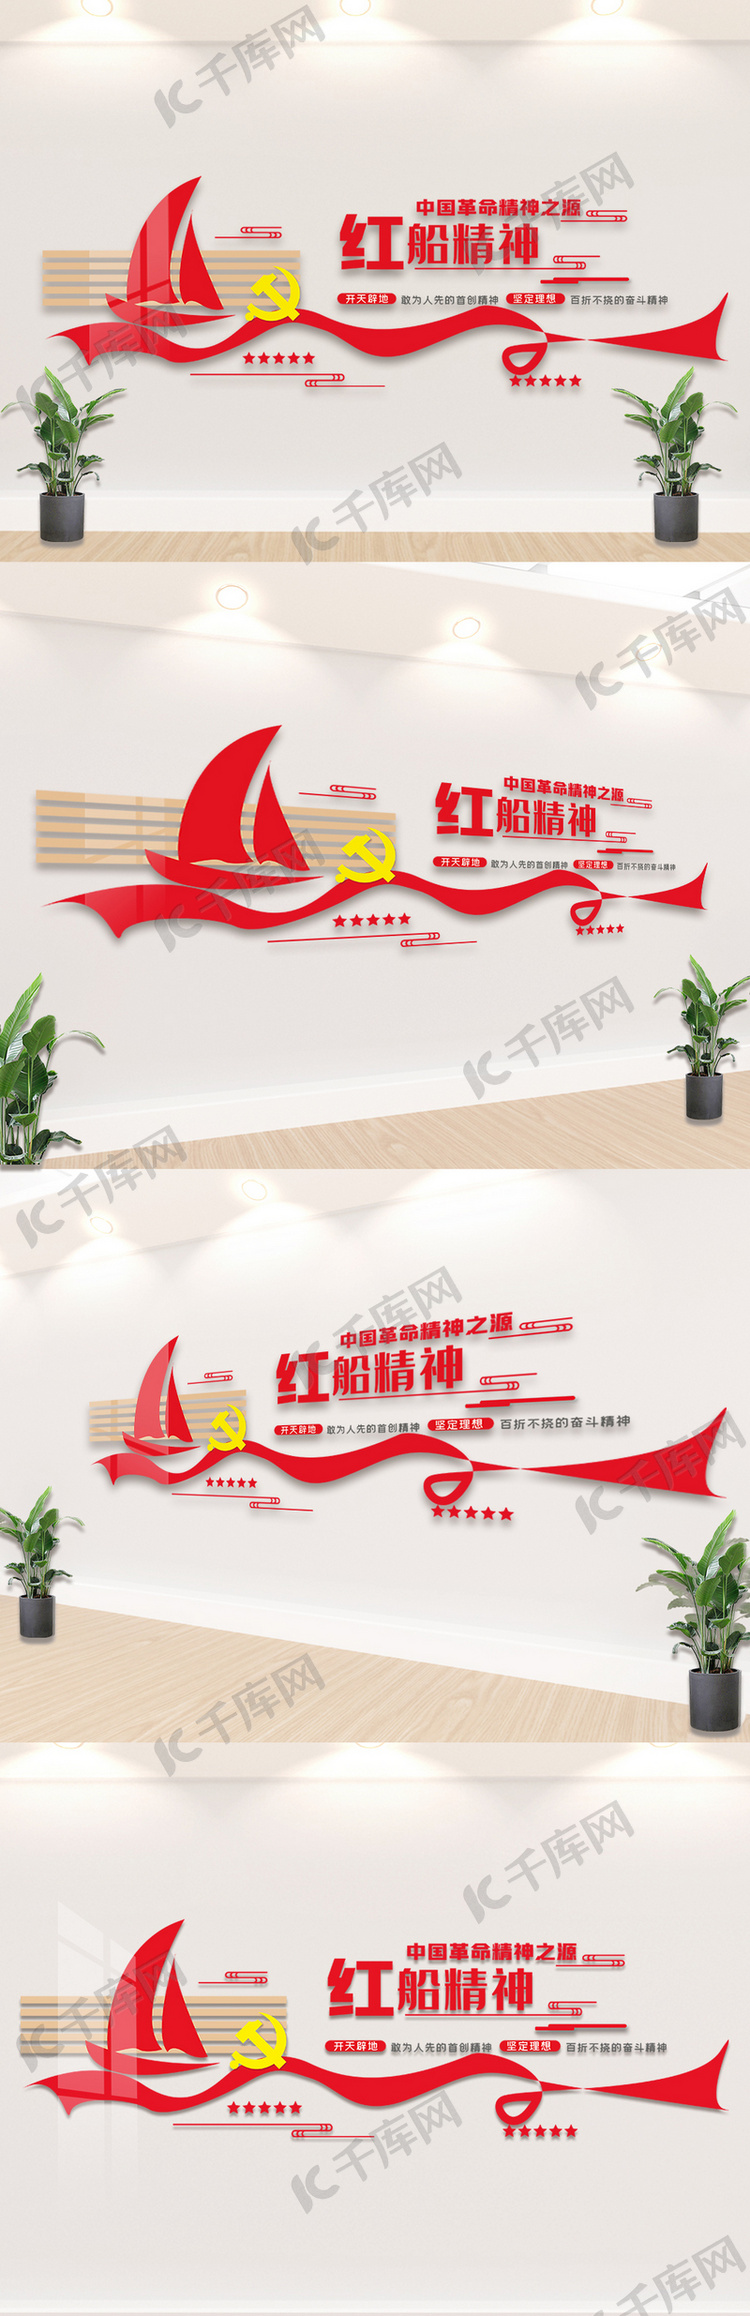 中国革命精神之源红船精神内容文化墙素材